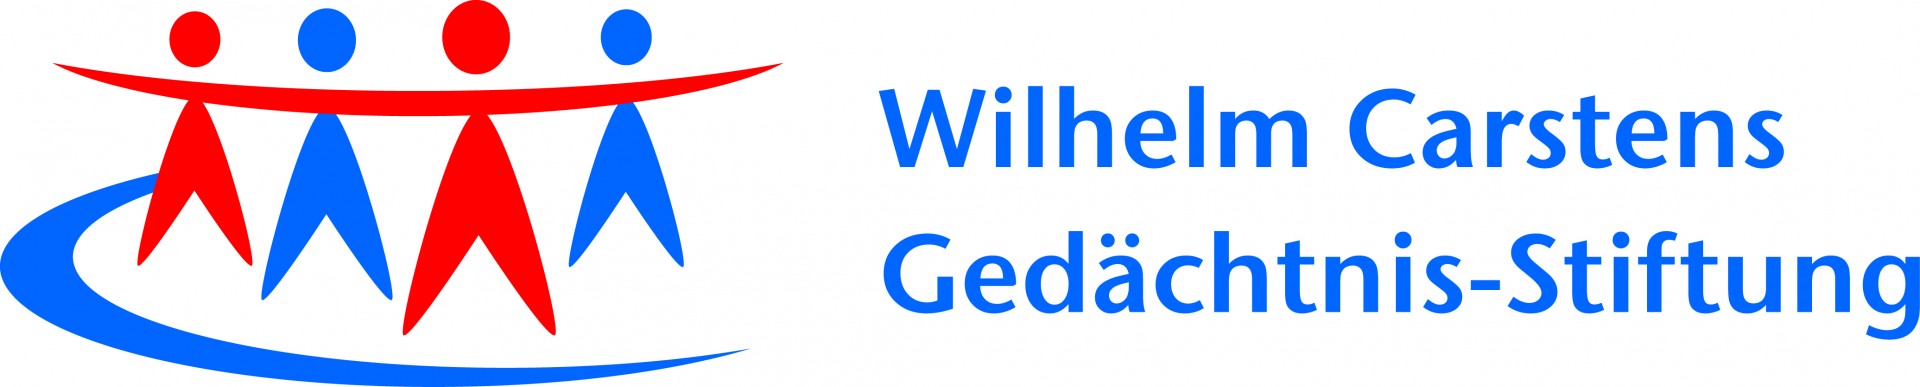 logo-wilhelm-carstens-gedaechtnis-stiftung-4c